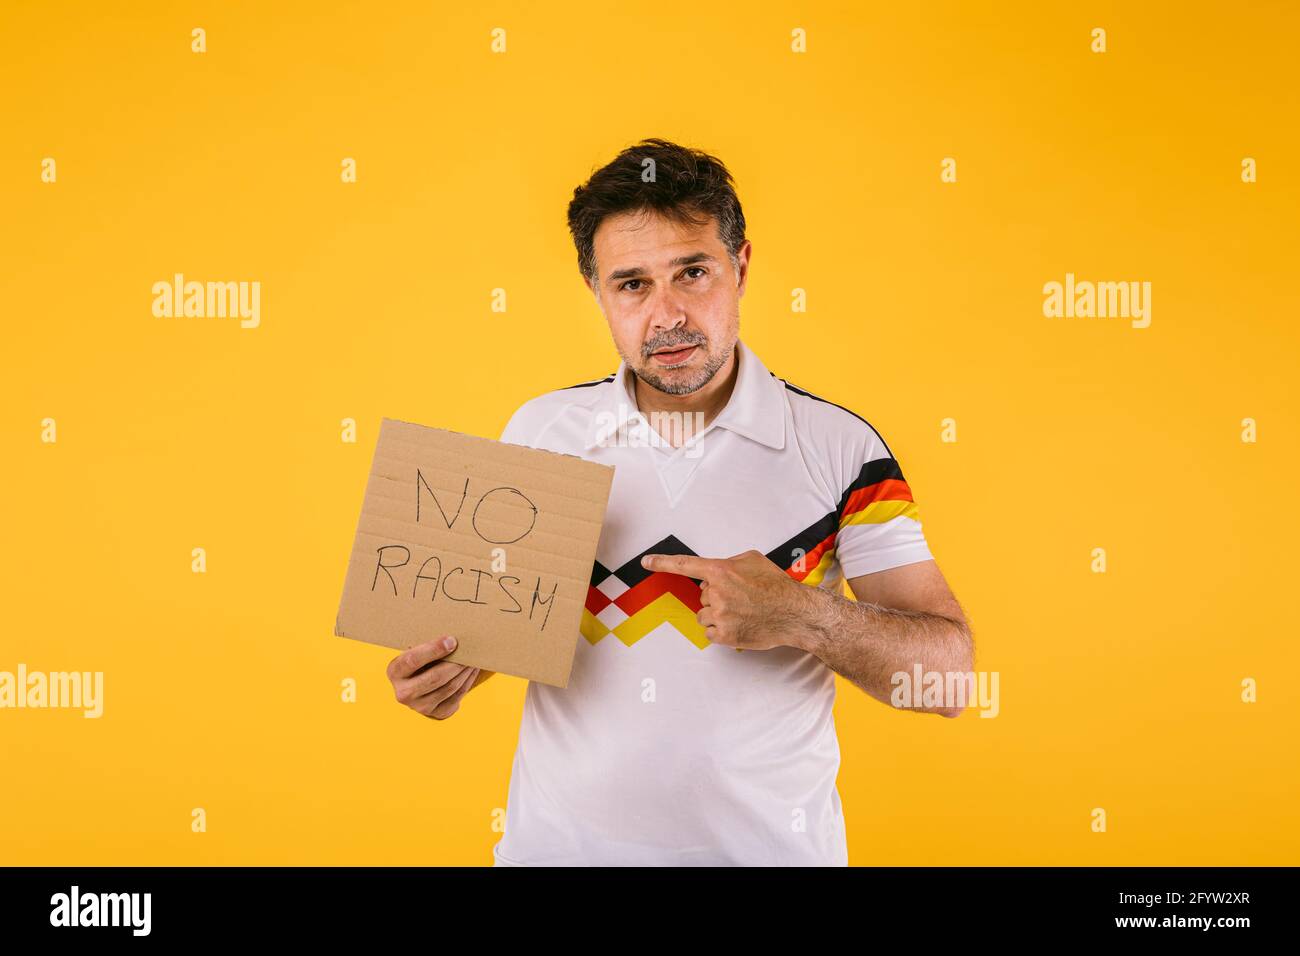 Un aficionado al fútbol que lleva una camiseta blanca con rayas negras, rojas y amarillas, tiene un cartel que dice 'No racismo' Foto de stock